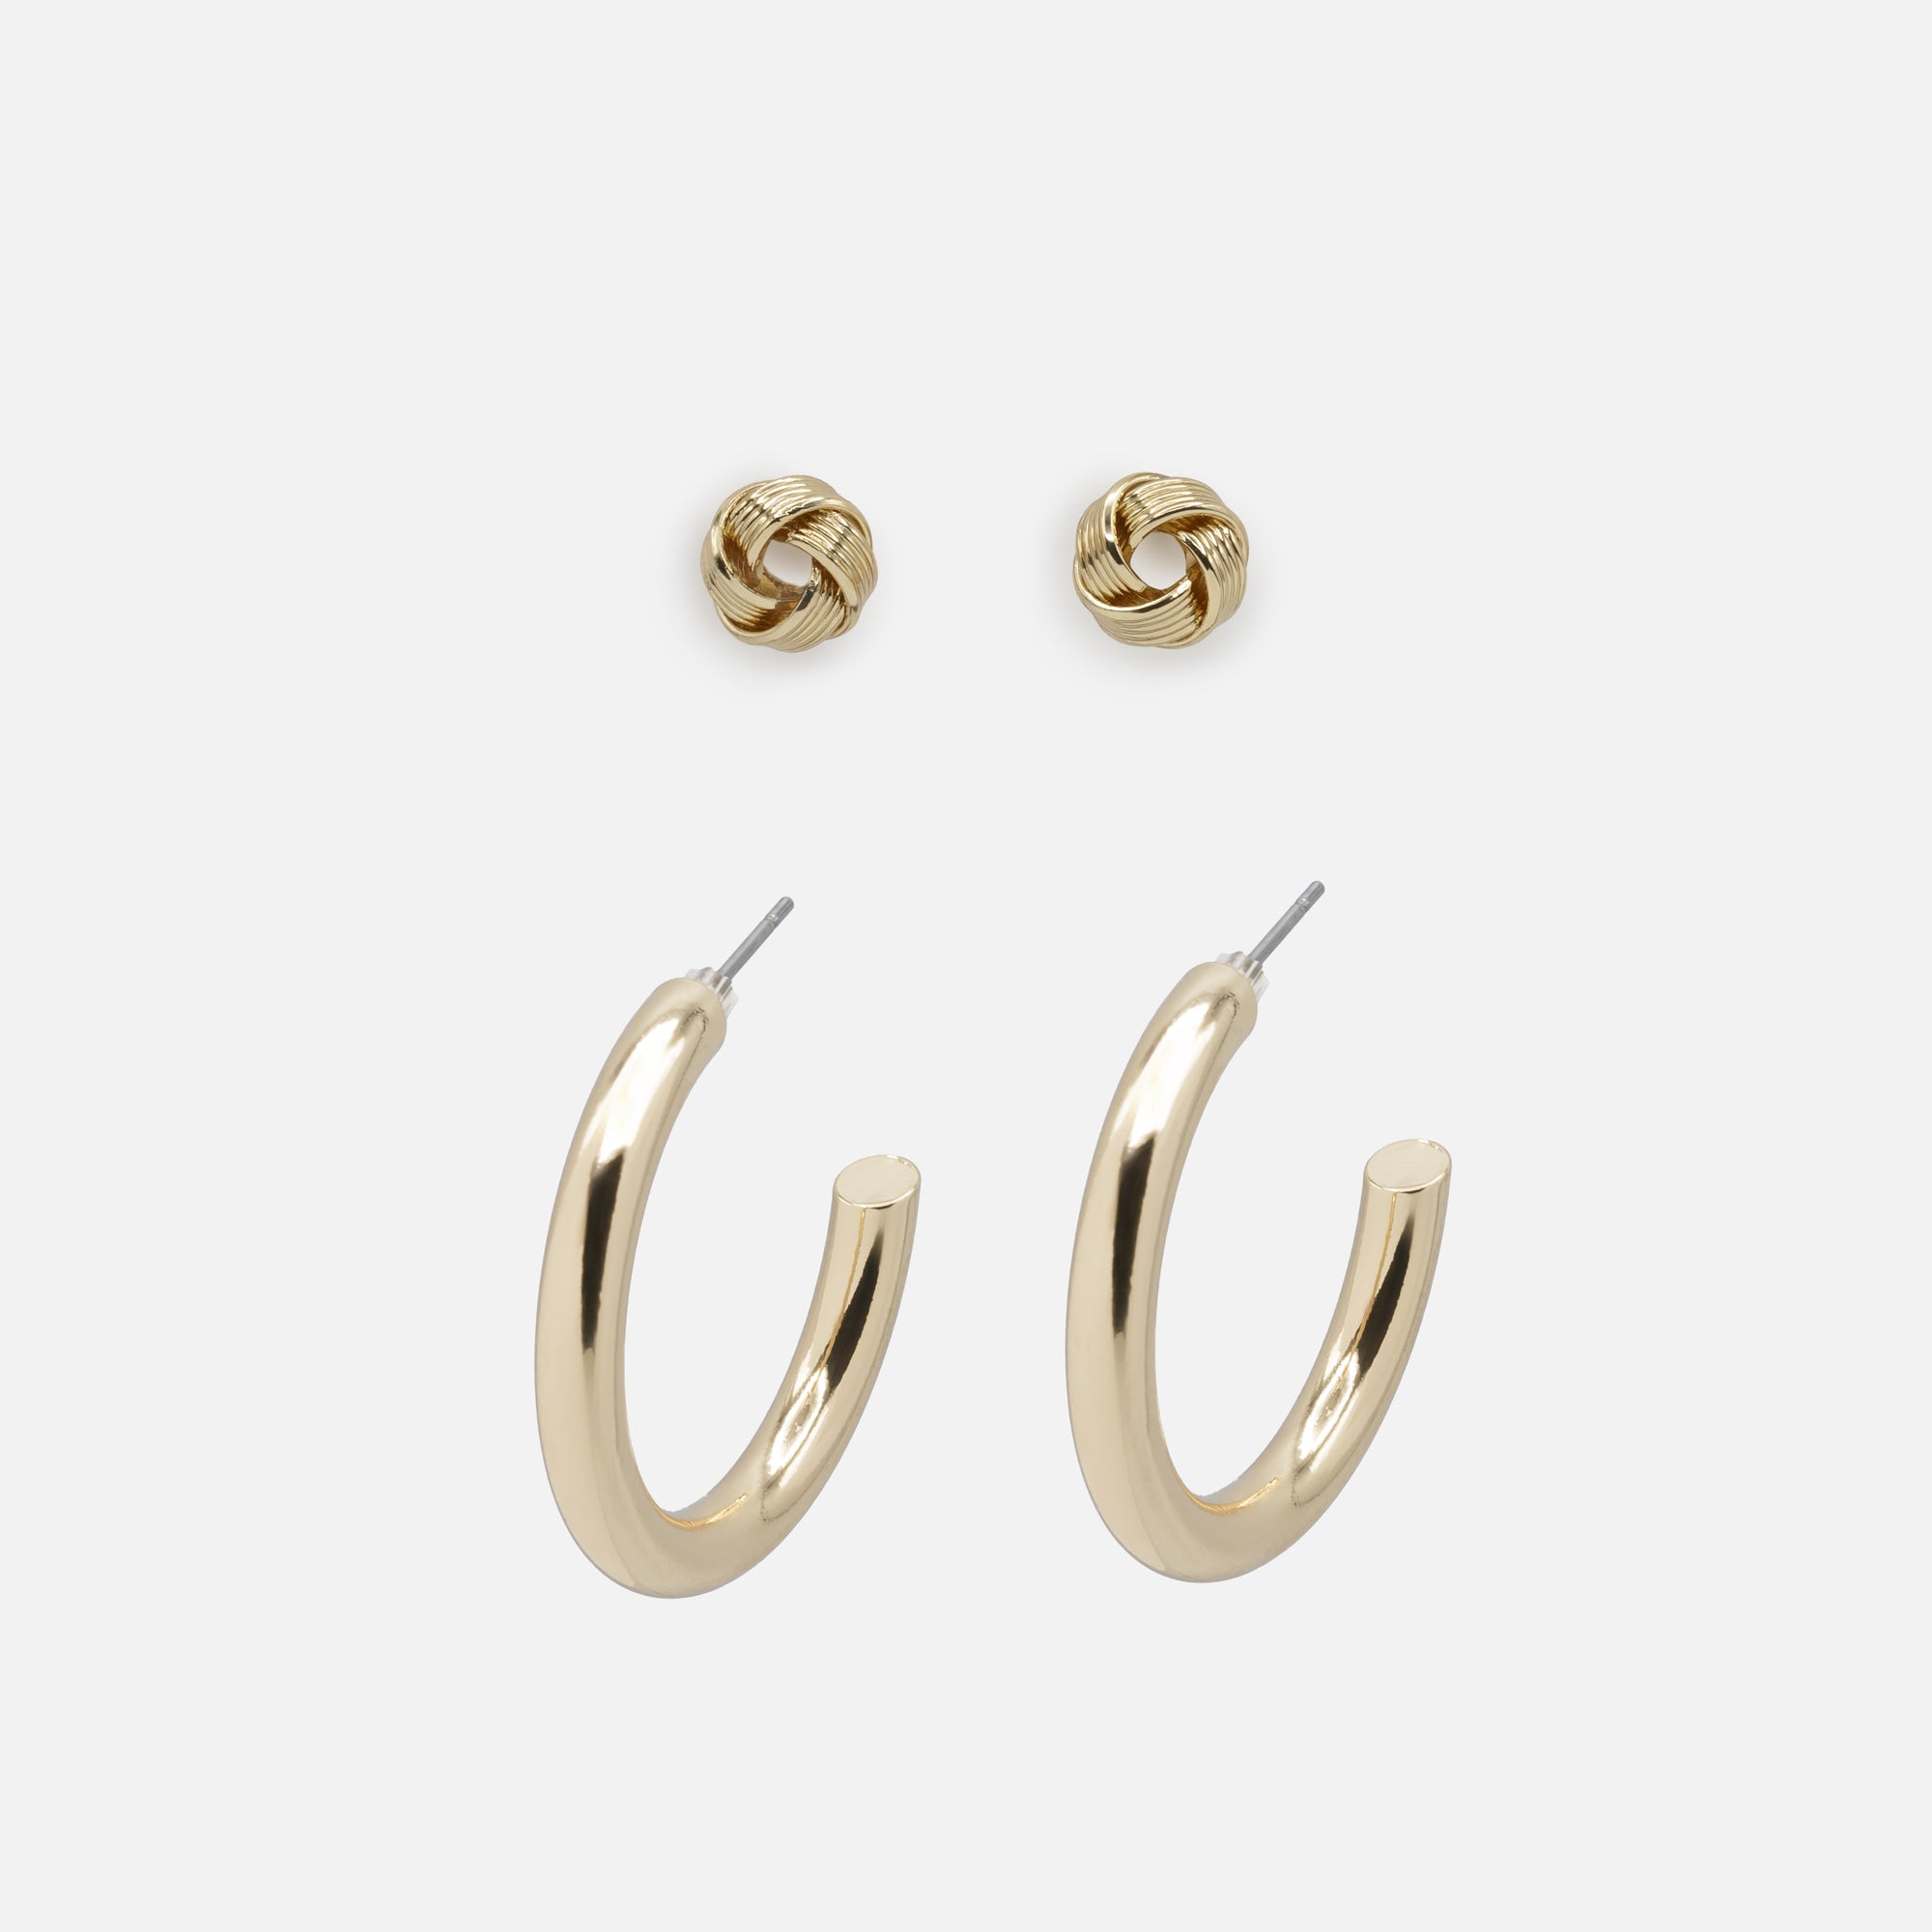 Duo de boucles d'oreilles dorées noeuds et anneaux épais